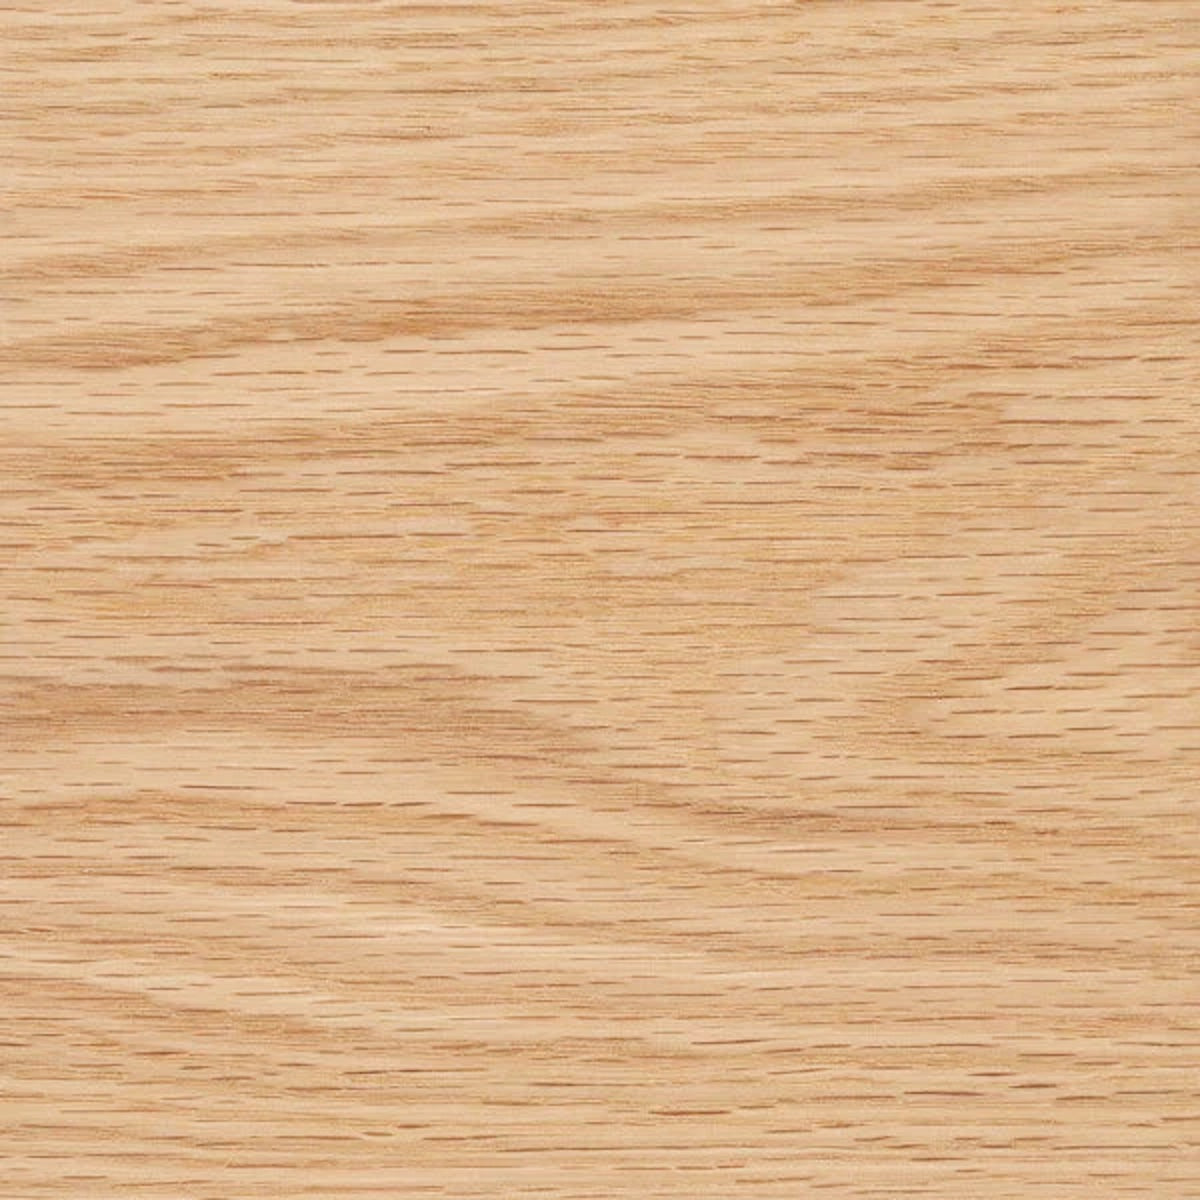 S4S FAS Lumber - 5/4 x 10